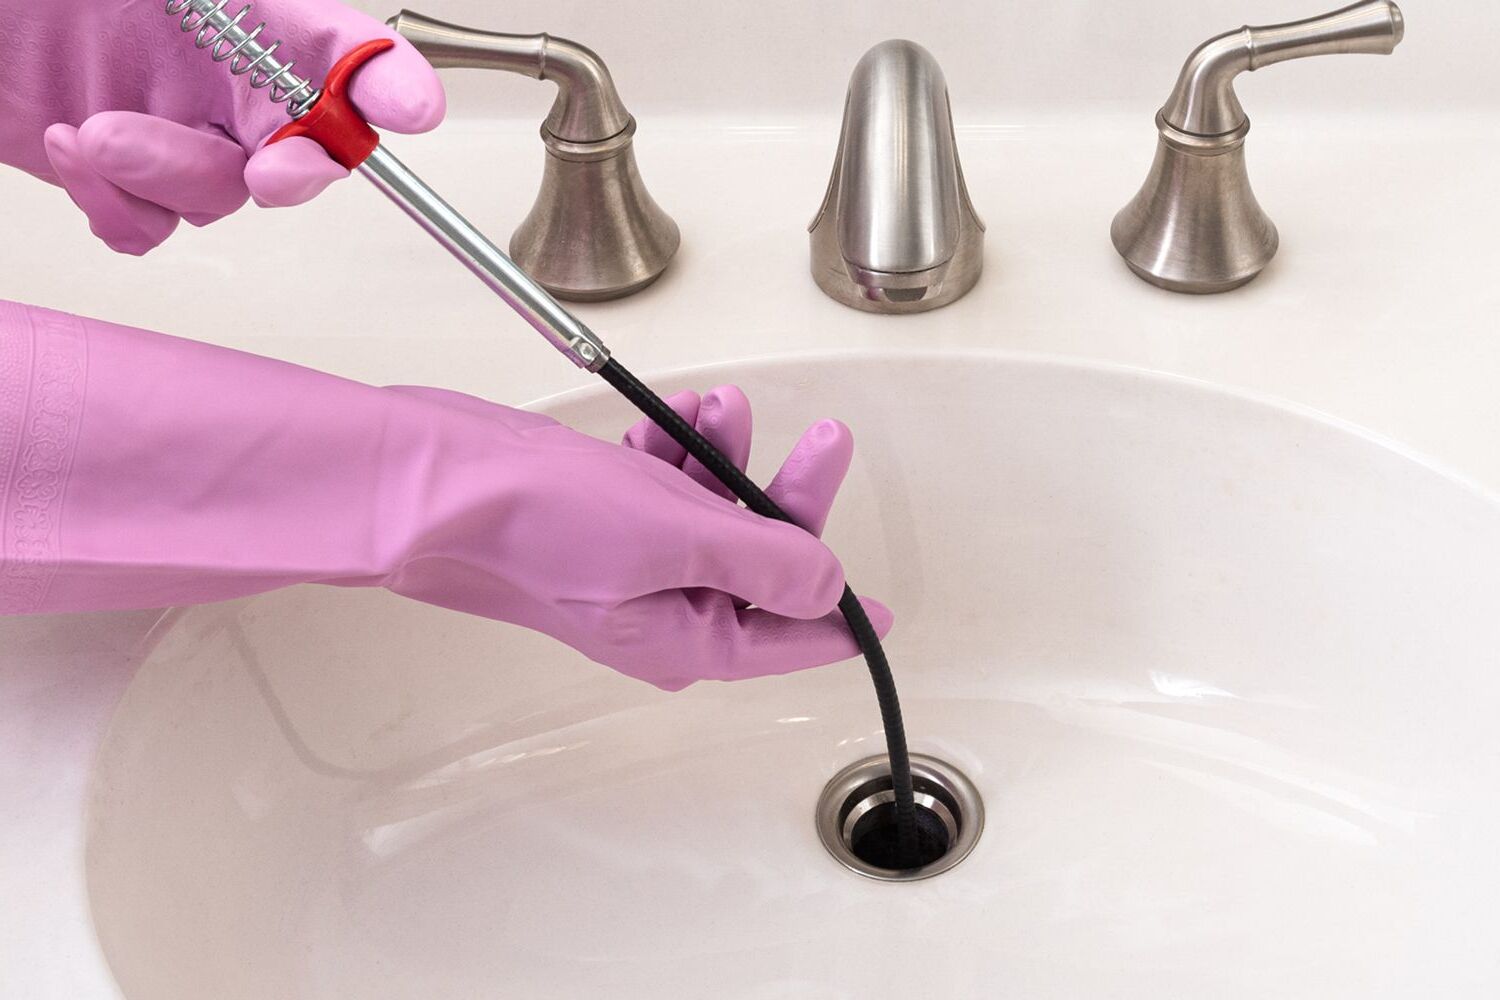 DIY Unclog Bathroom Sink: Step-by-step Guide